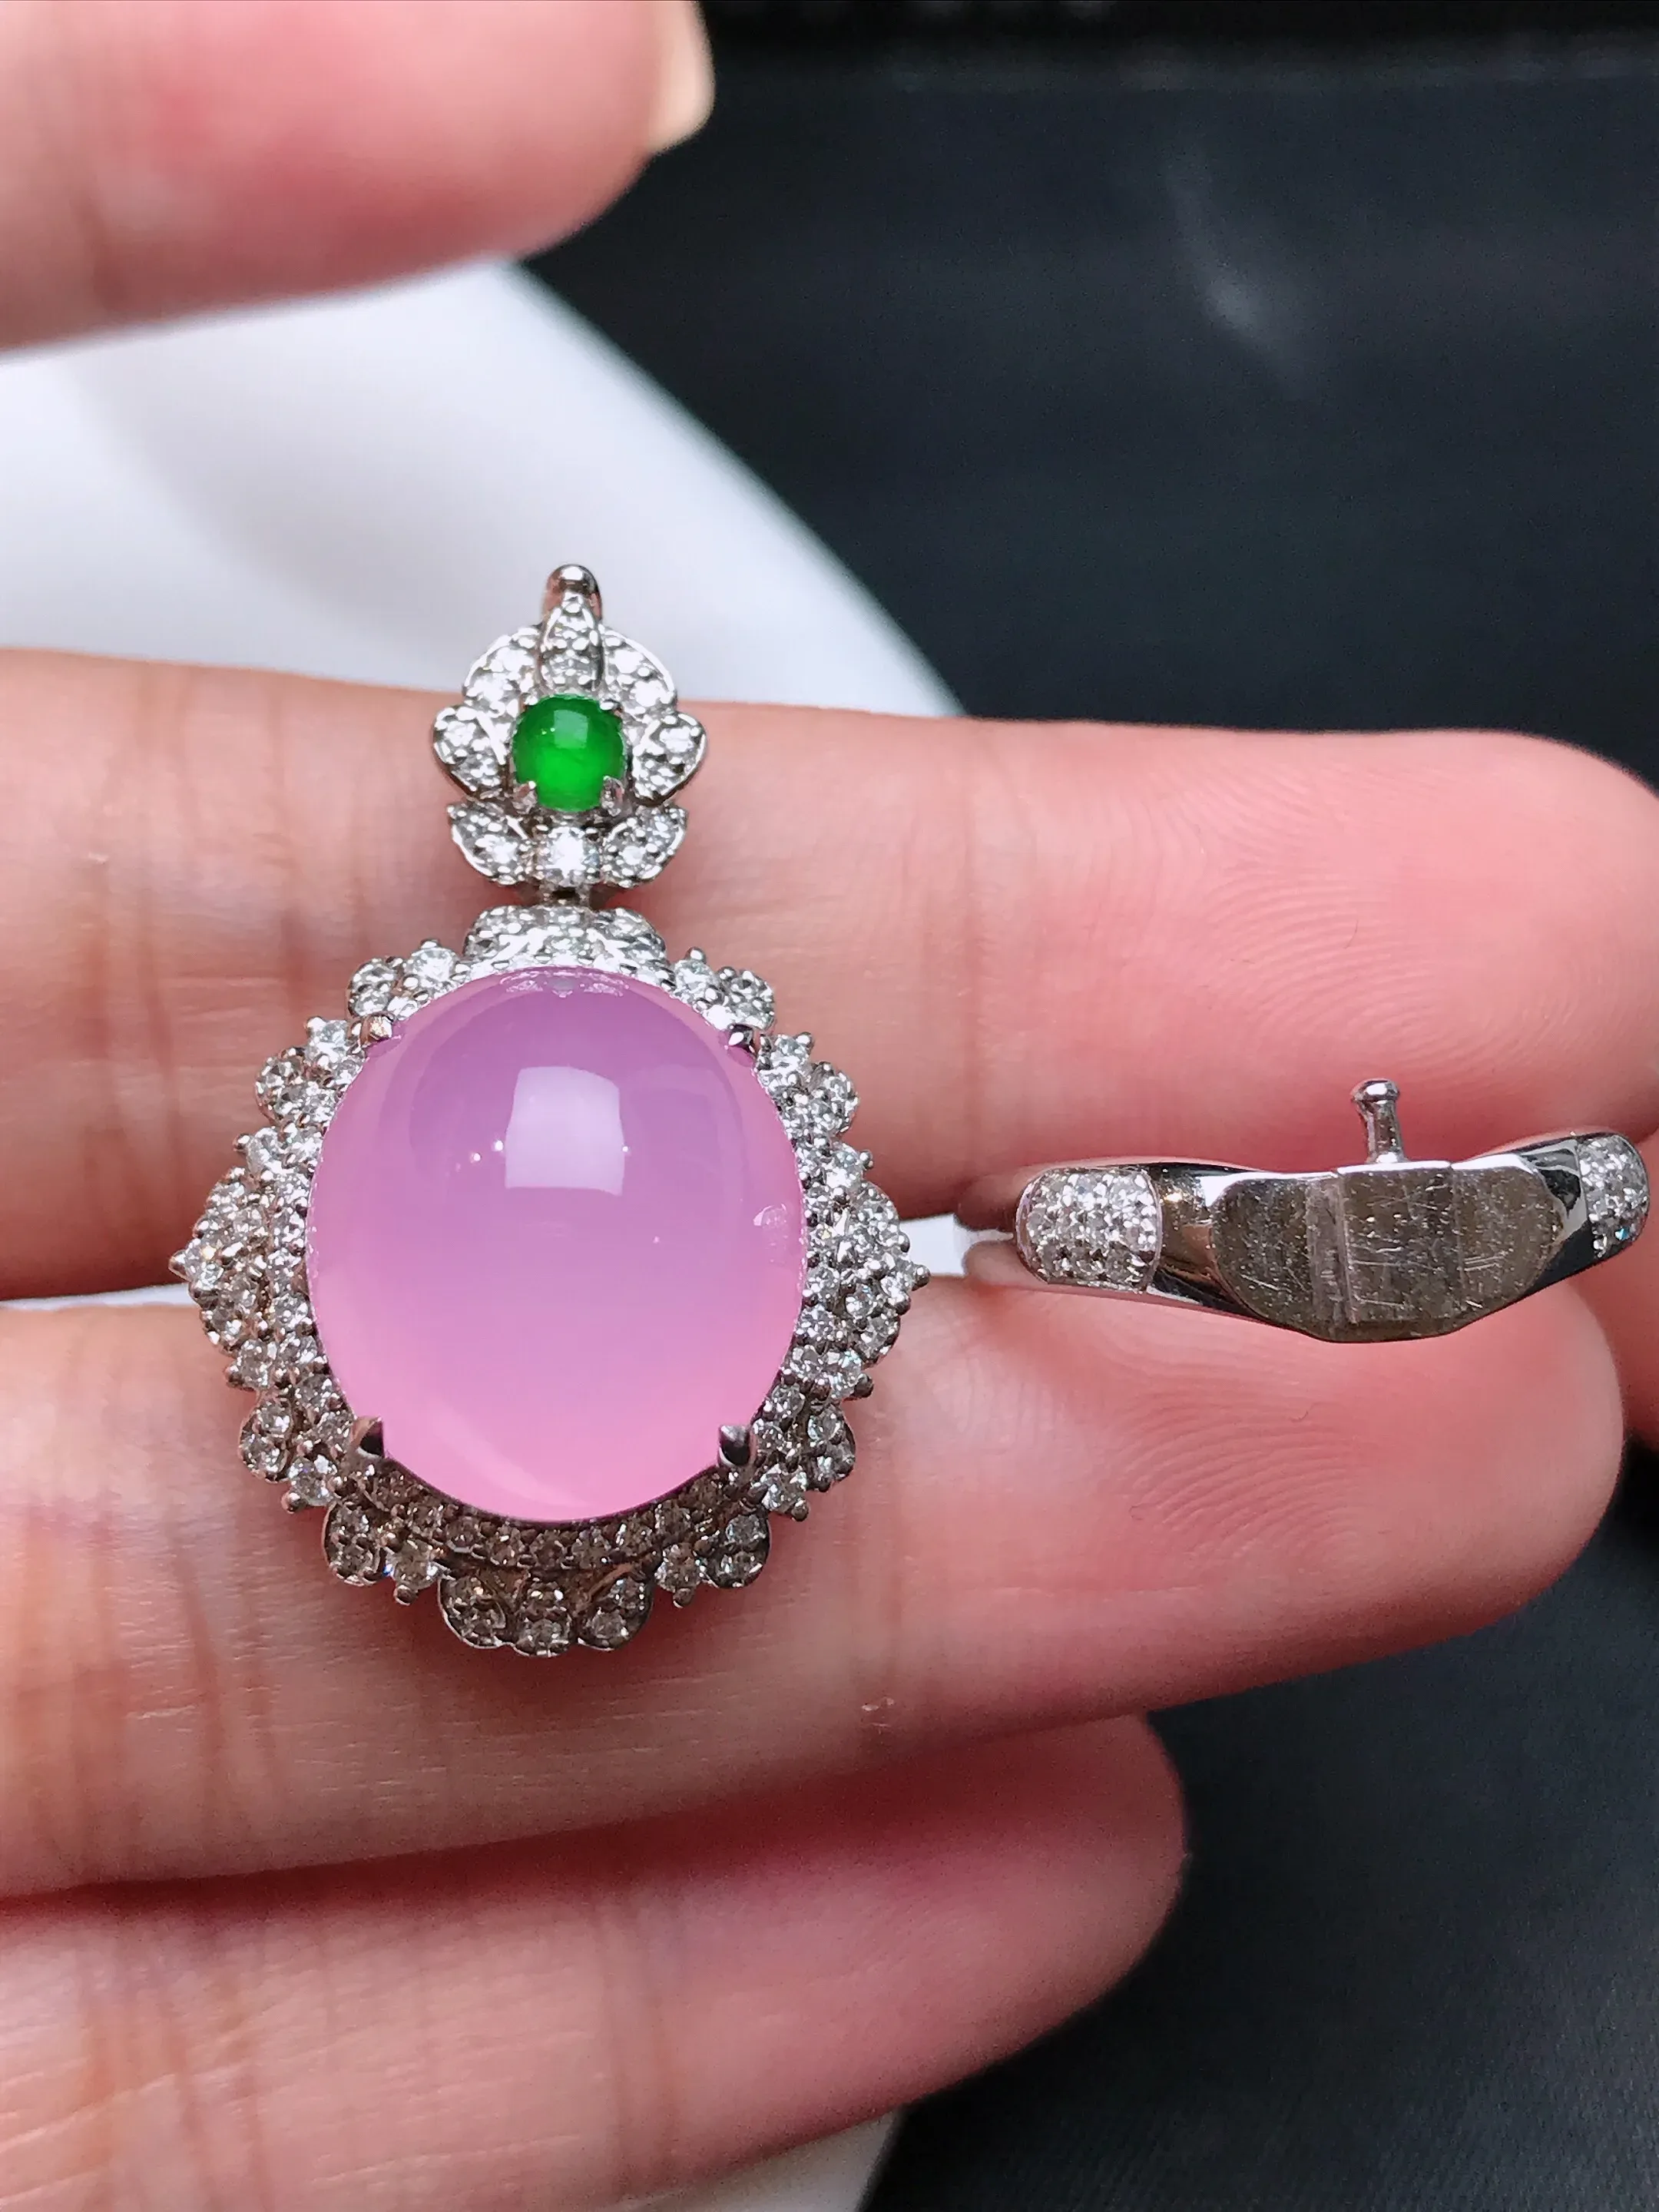 严选推荐戒指，老坑冰种粉紫色戒指吊坠两用款，18k金钻镶嵌而成，简约时尚，品相佳，佩戴效果佳，